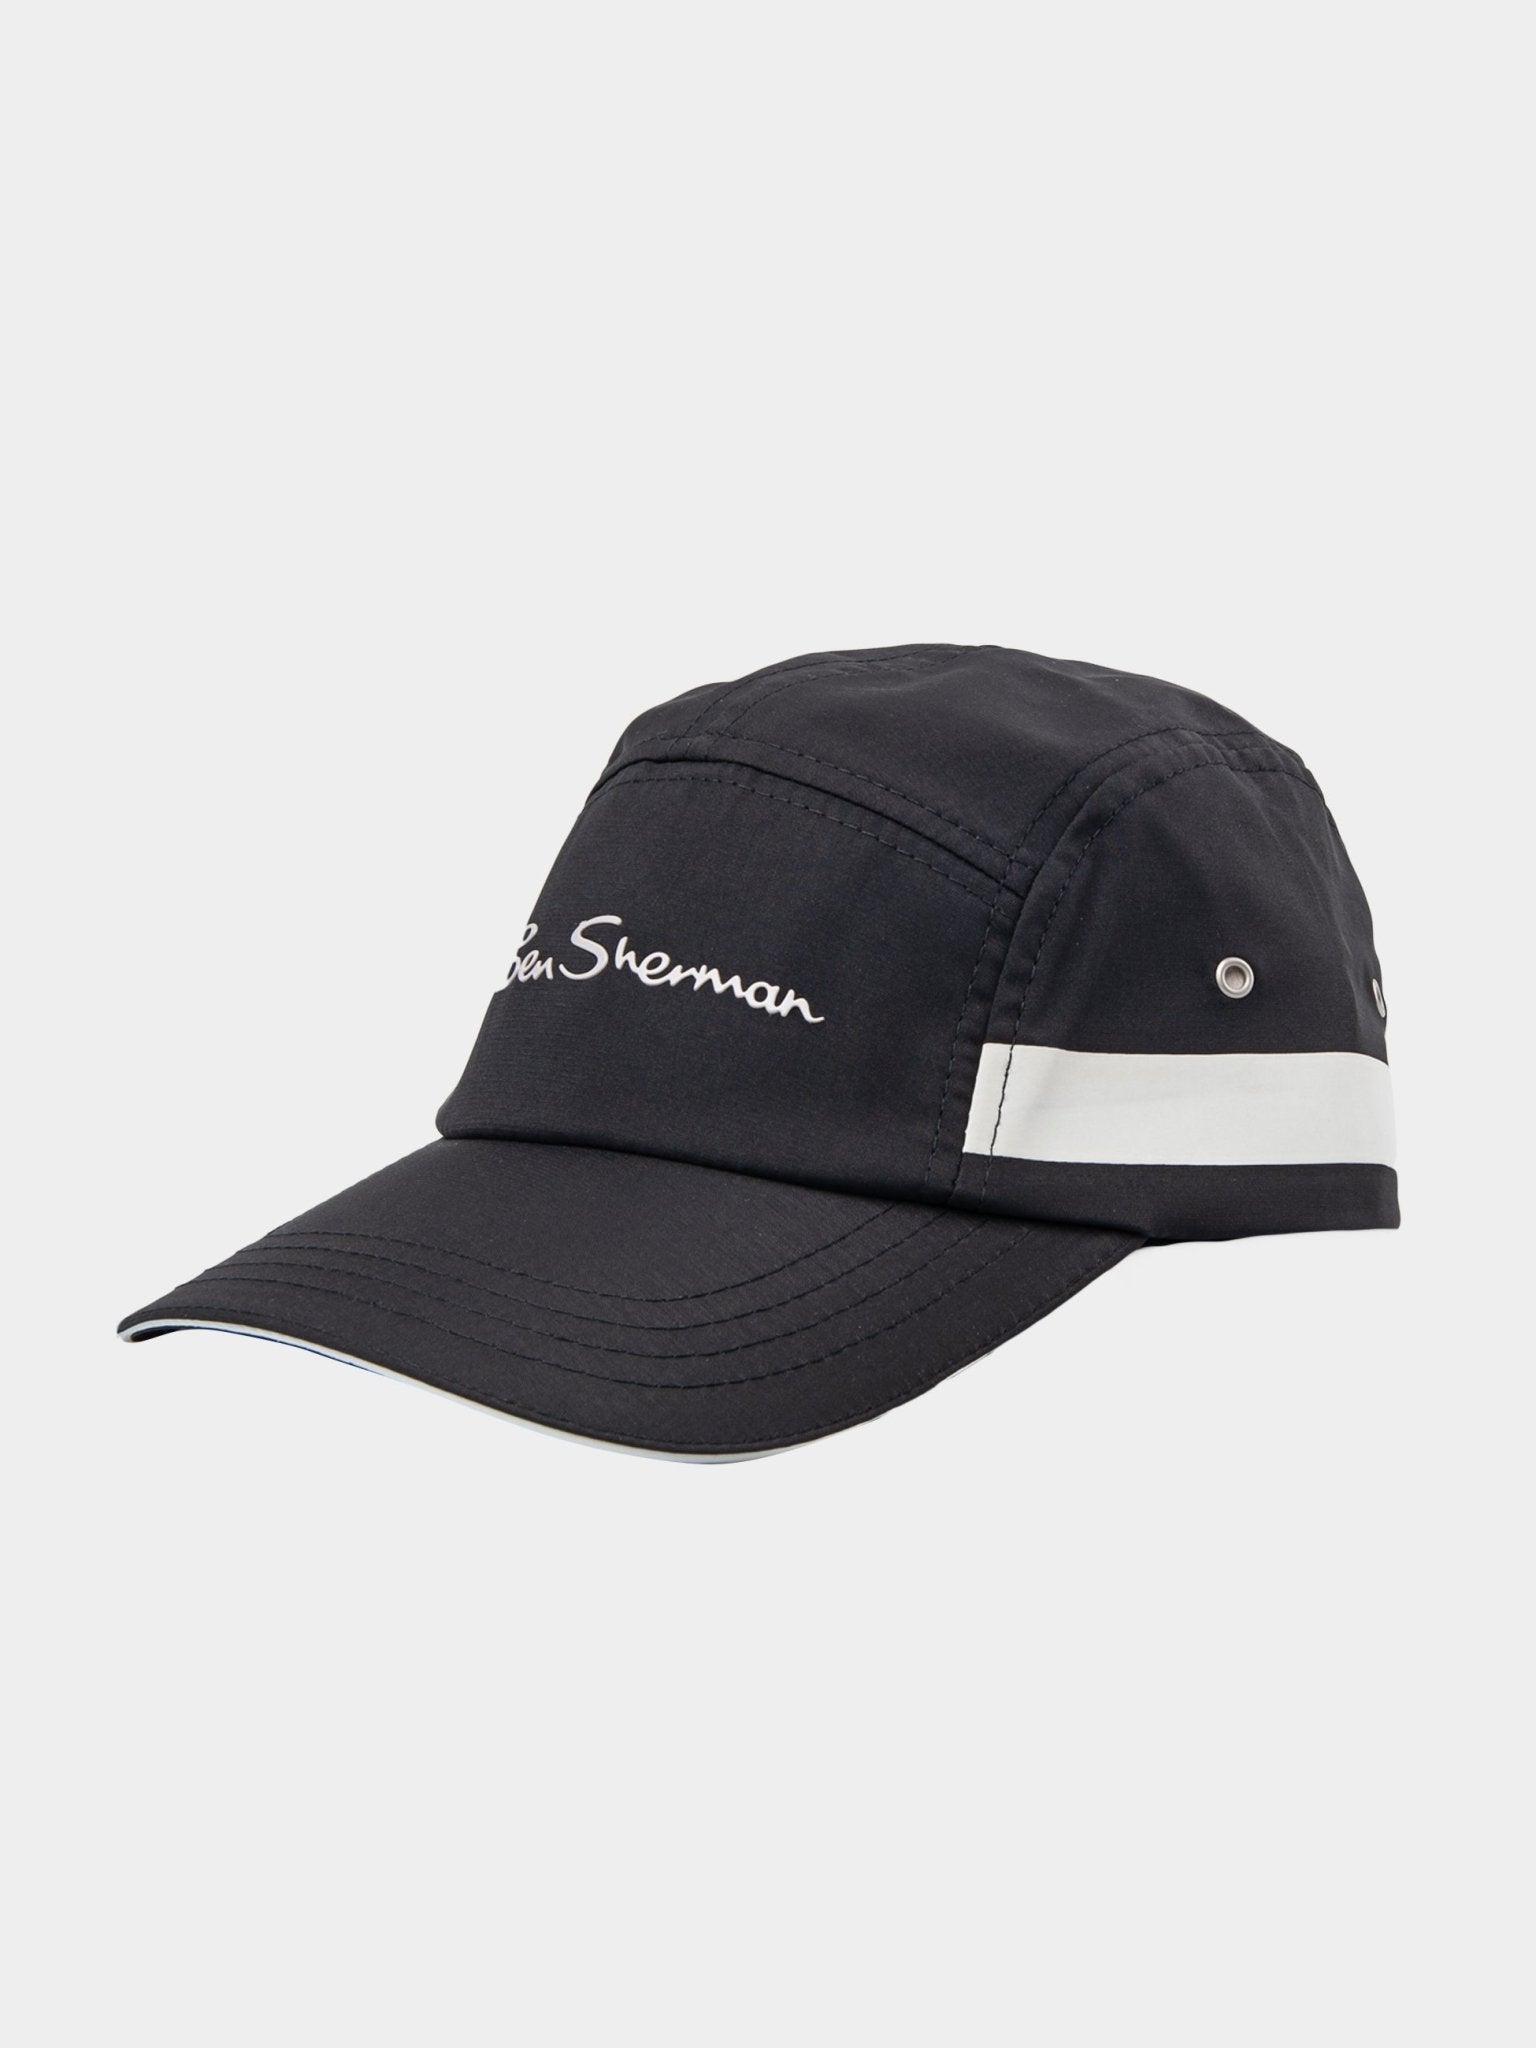 Ben Sherman Sport Caps